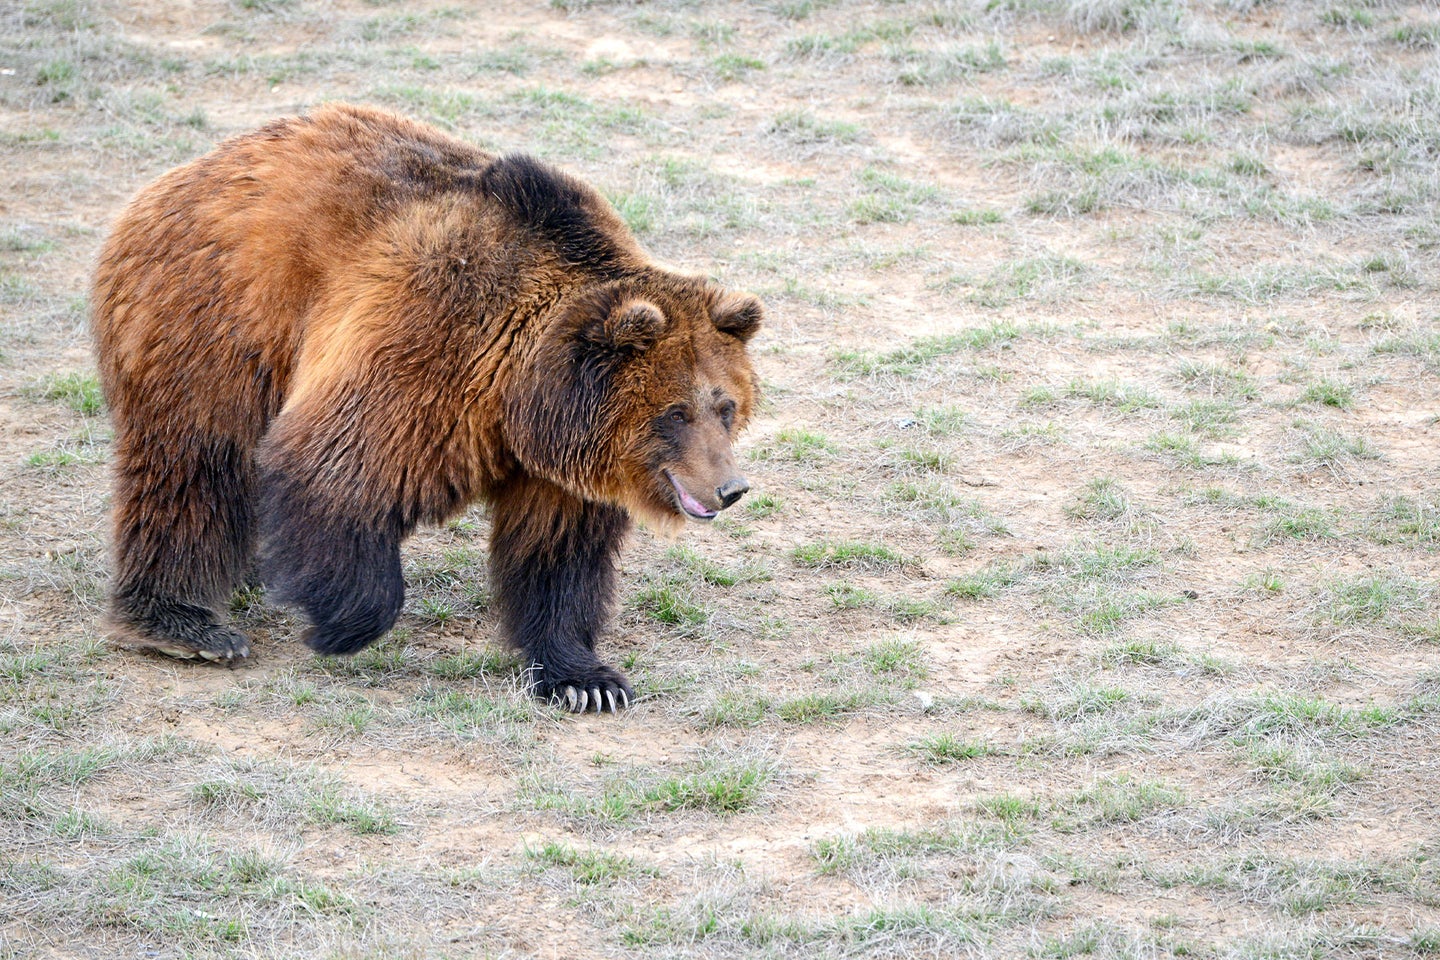 A grizzly bear walks through an open field.